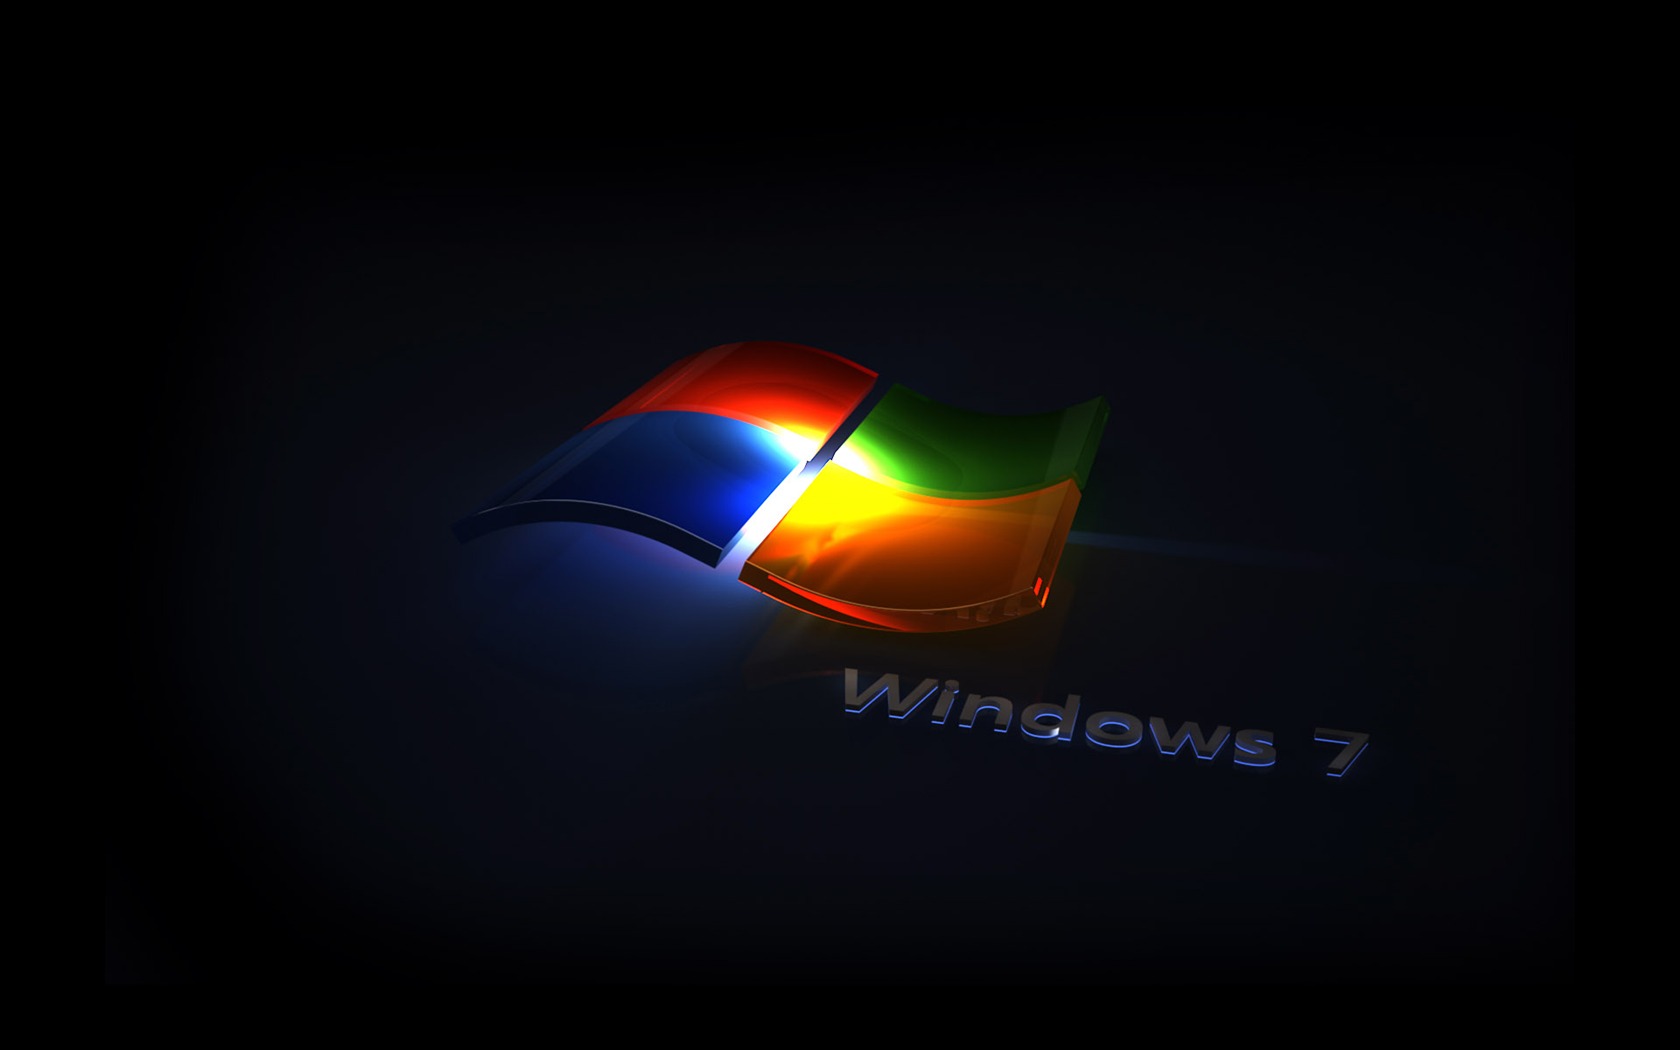 Windows7 theme wallpaper (2) #18 - 1680x1050